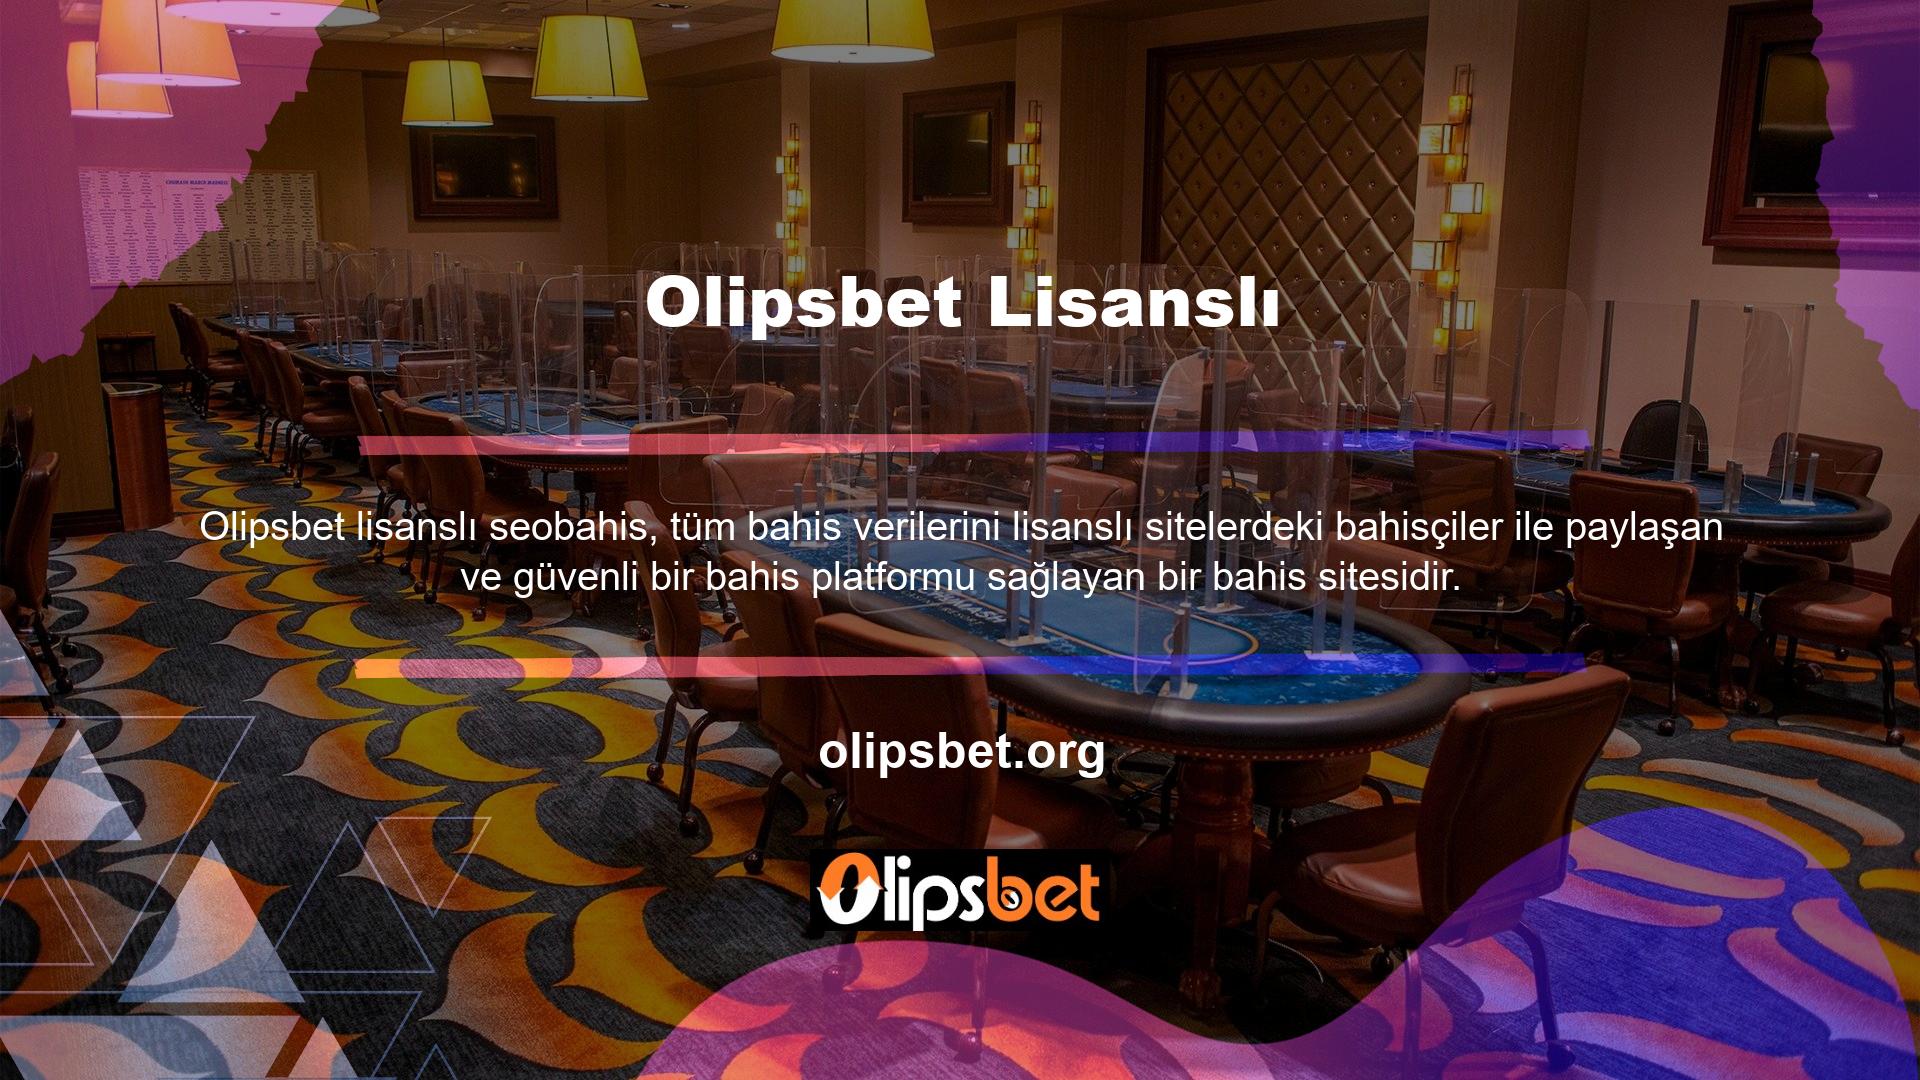 Olipsbet güvenilir bir yasa dışı casino sitesidir ve günümüzde en popüler sitelerden biri haline gelmiştir